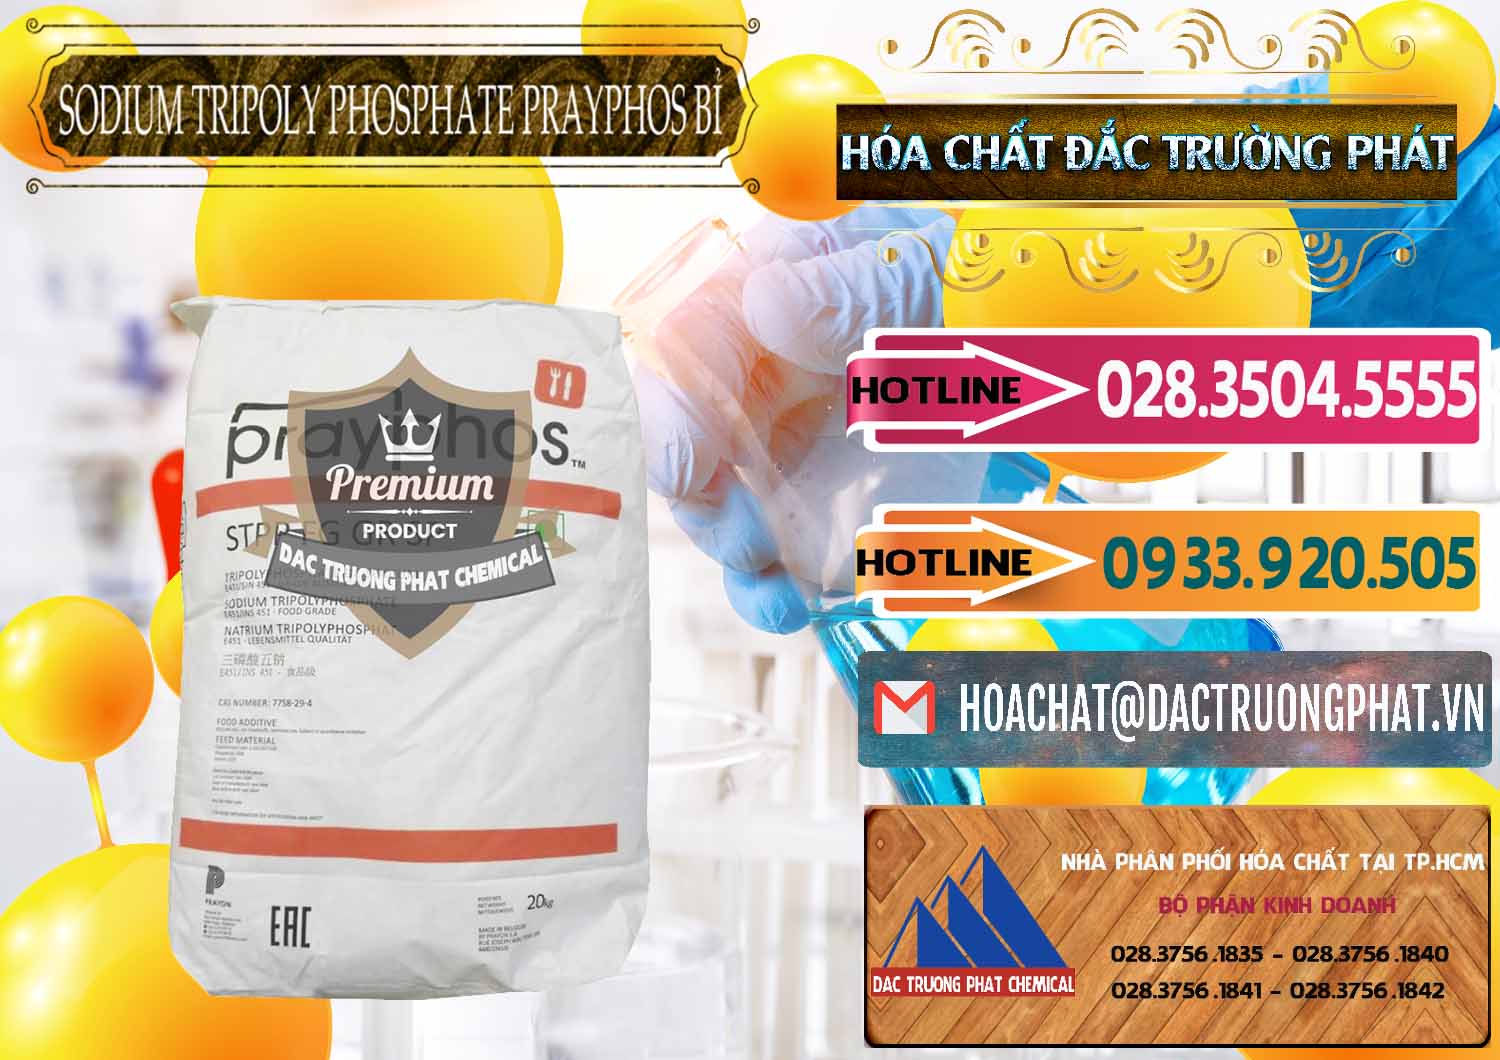 Nhà nhập khẩu và bán Sodium Tripoly Phosphate - STPP Prayphos Bỉ Belgium - 0444 - Phân phối & nhập khẩu hóa chất tại TP.HCM - dactruongphat.vn